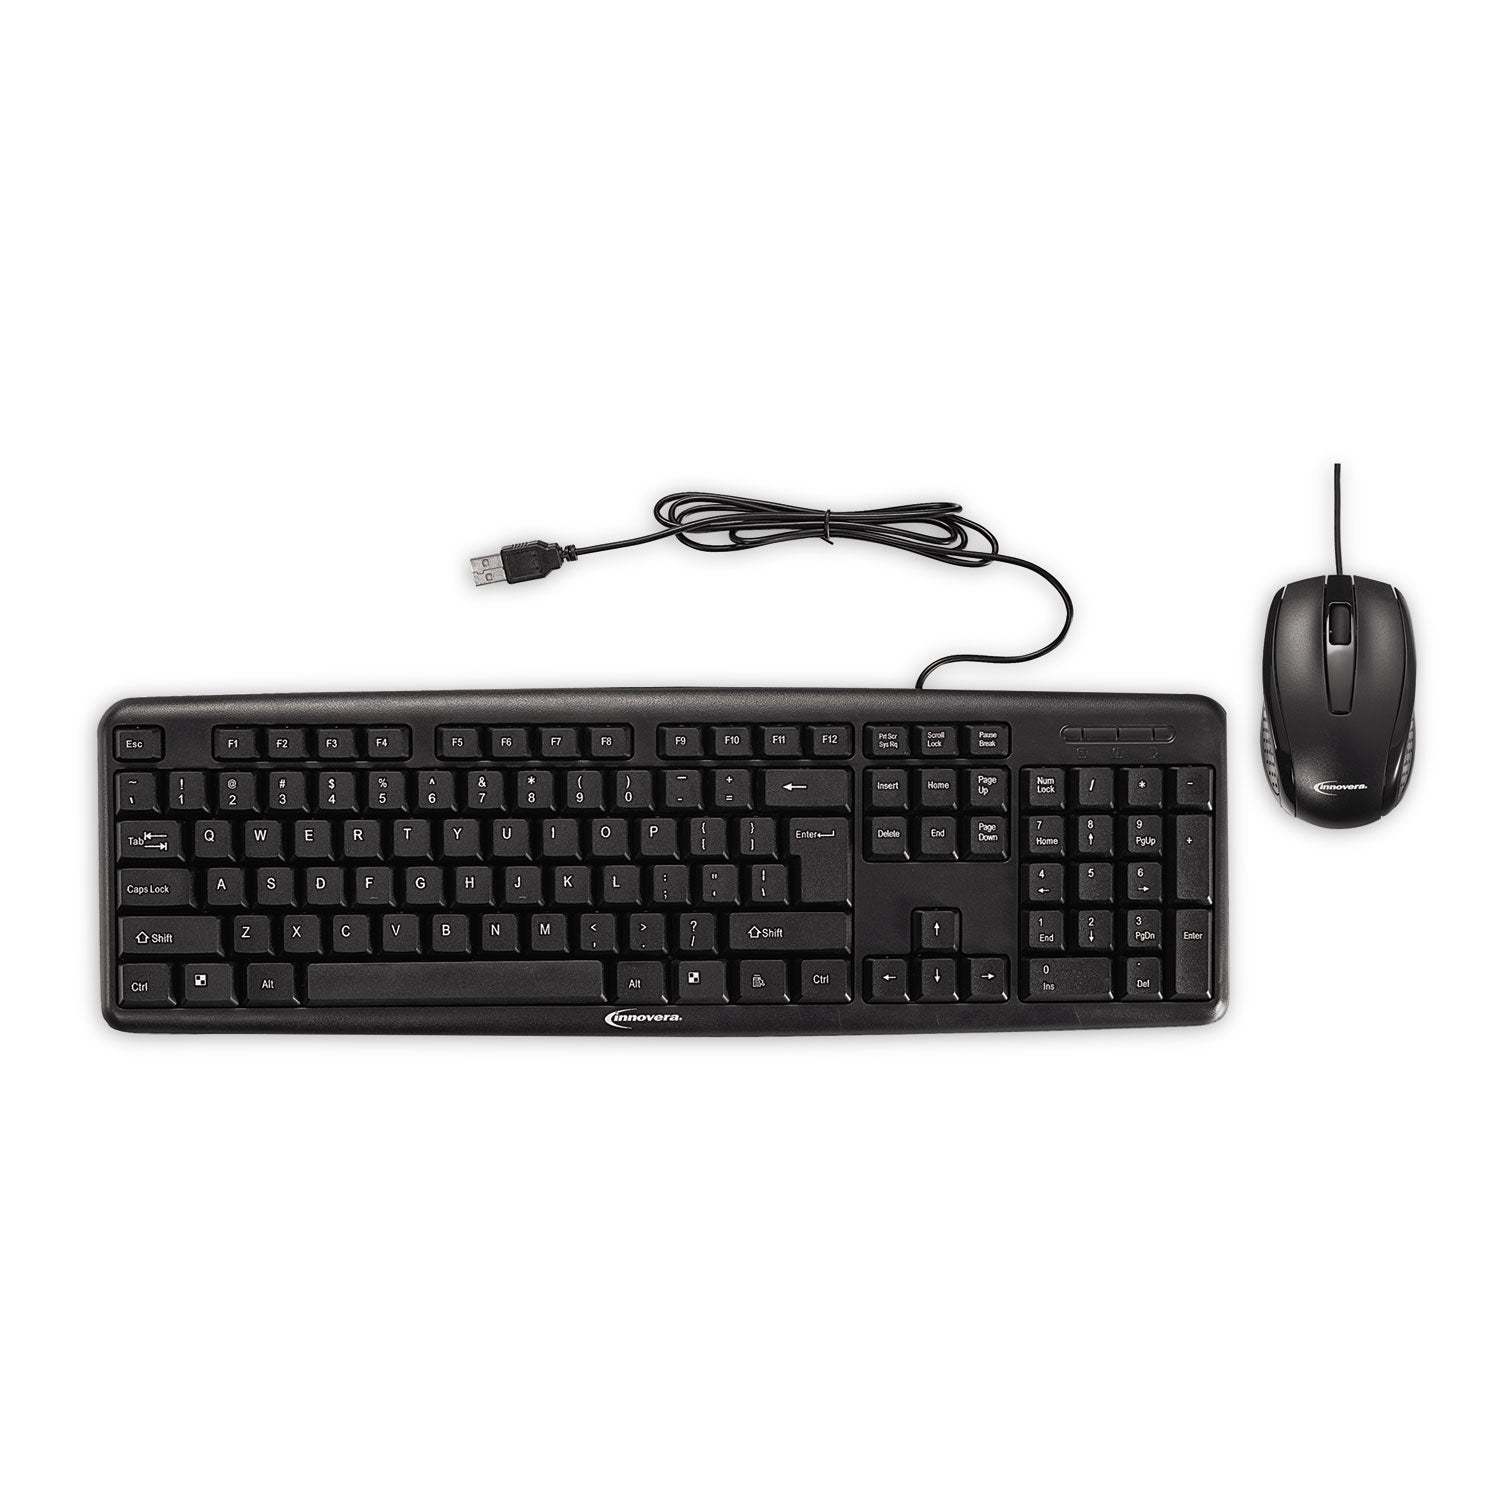 slimline-keyboard-and-mouse-usb-20-black_ivr69202 - 1